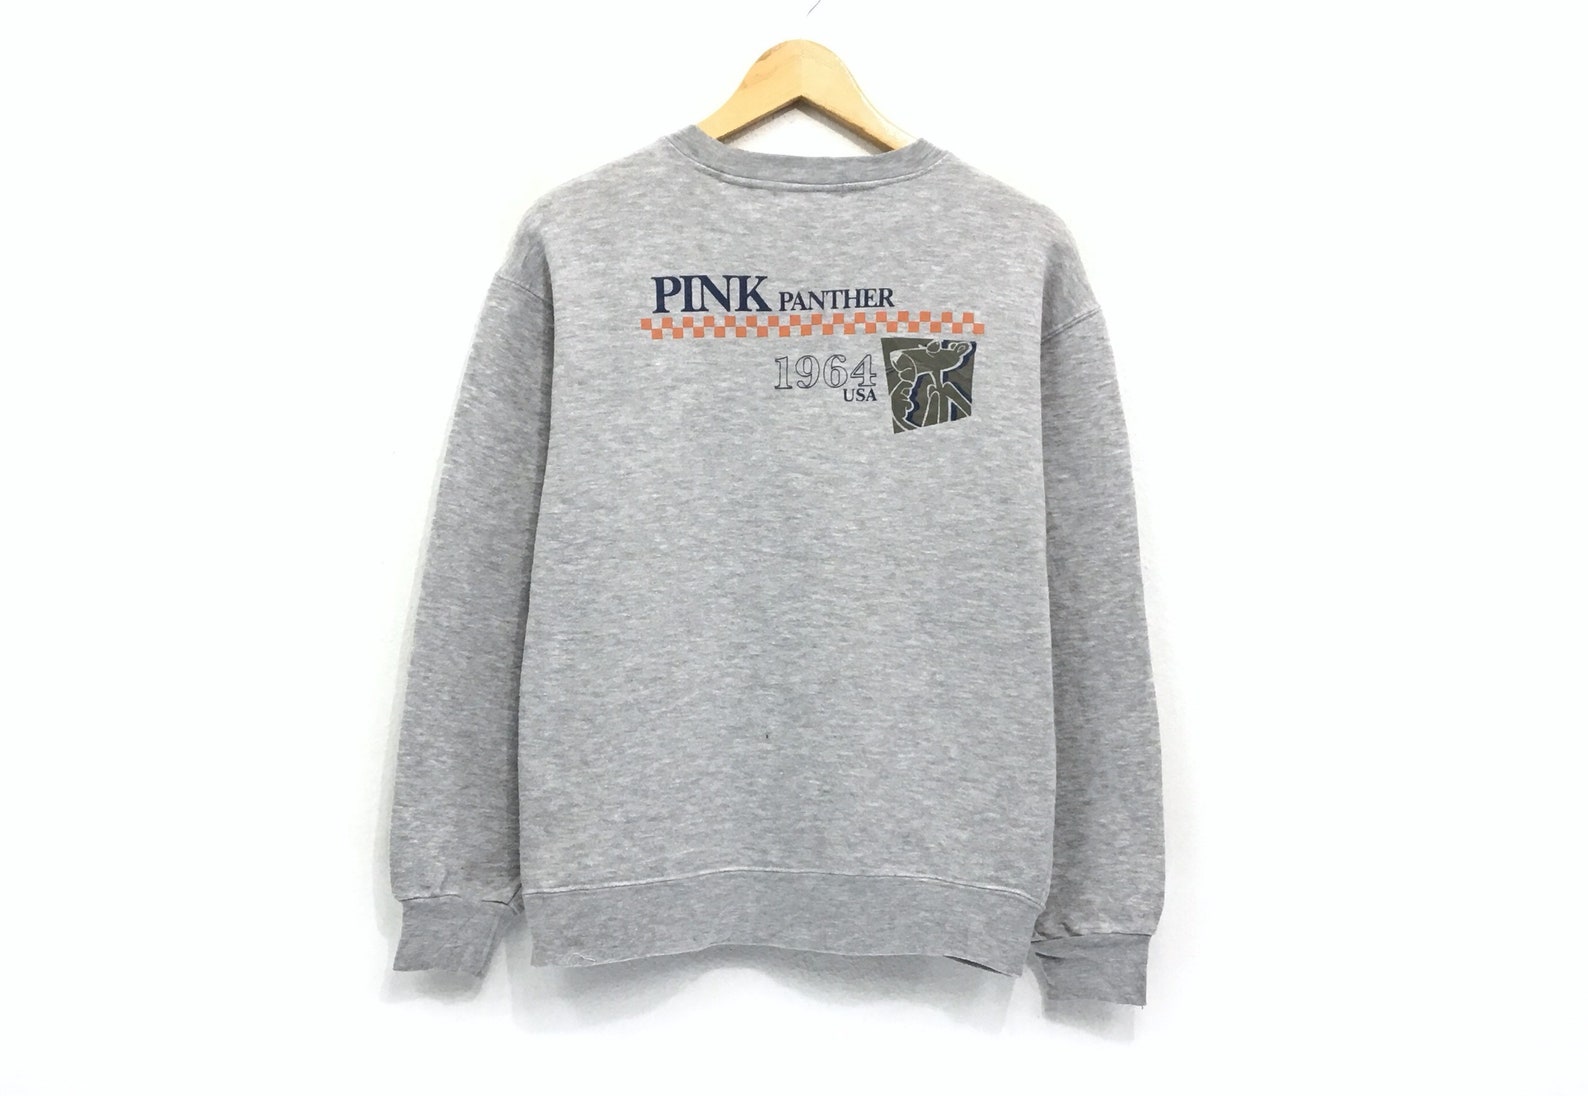 PINK PANTHER Crewneck Sweatshirt Jumper Big Logo Print | Etsy